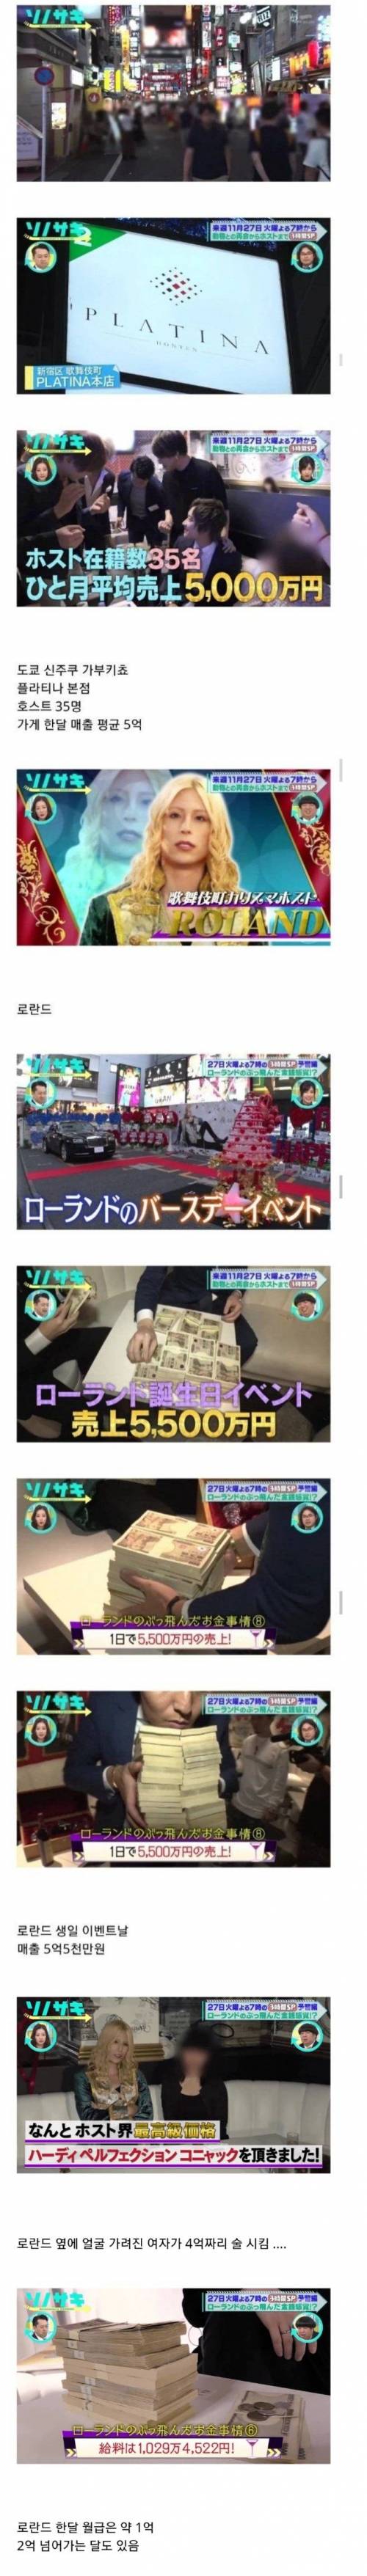 [스압] 혼자서 하루에 6억 매출을 올린 일본의 넘버원 호스트